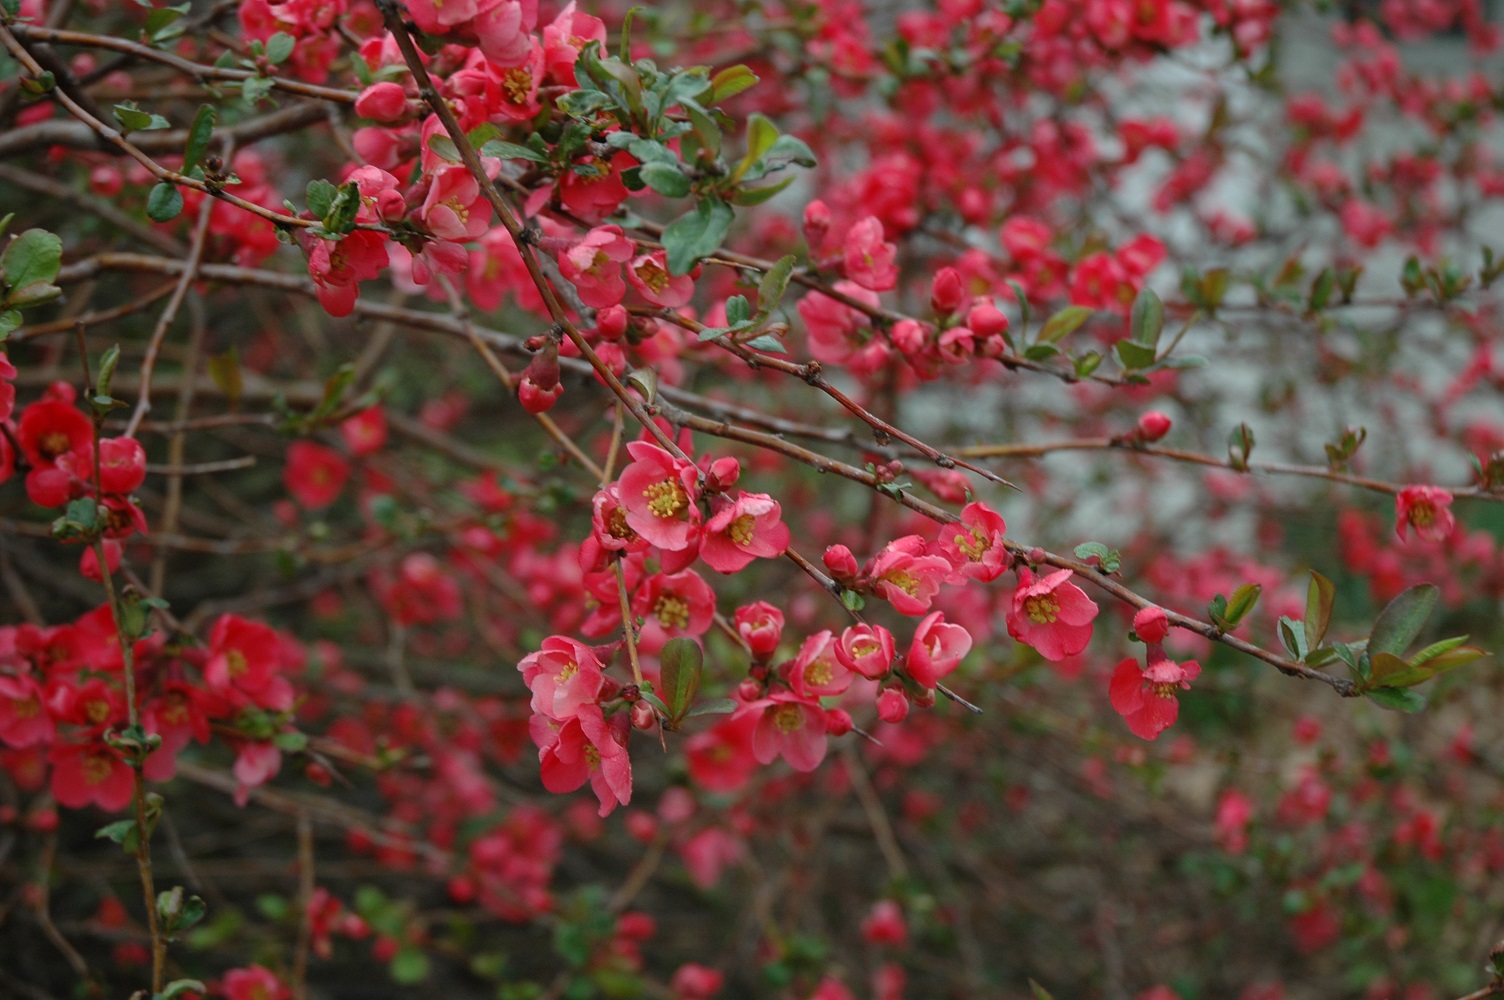 Flowering quince shrub